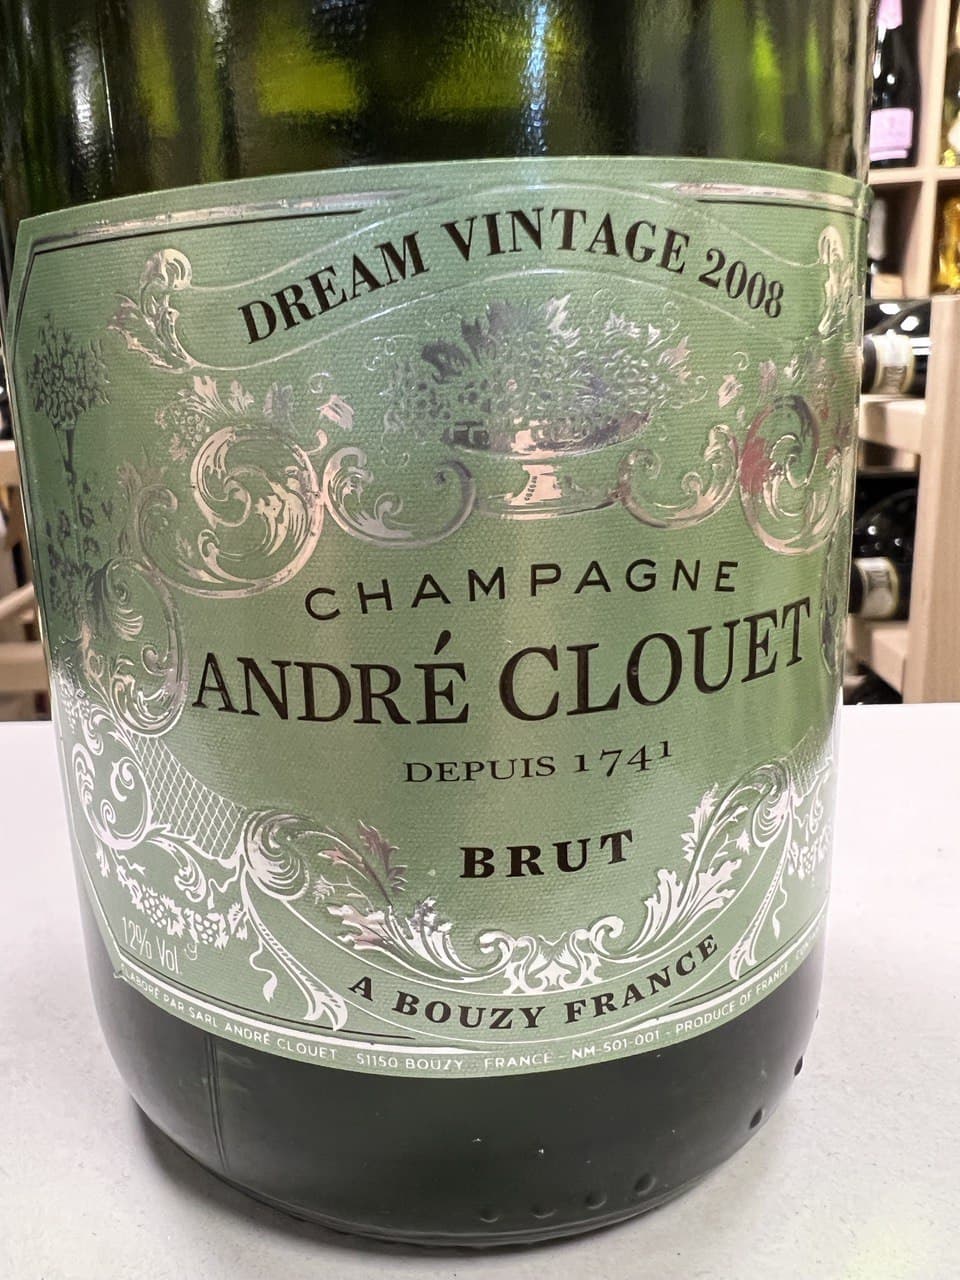 Champagne André Clouet Dream Vintage 2008